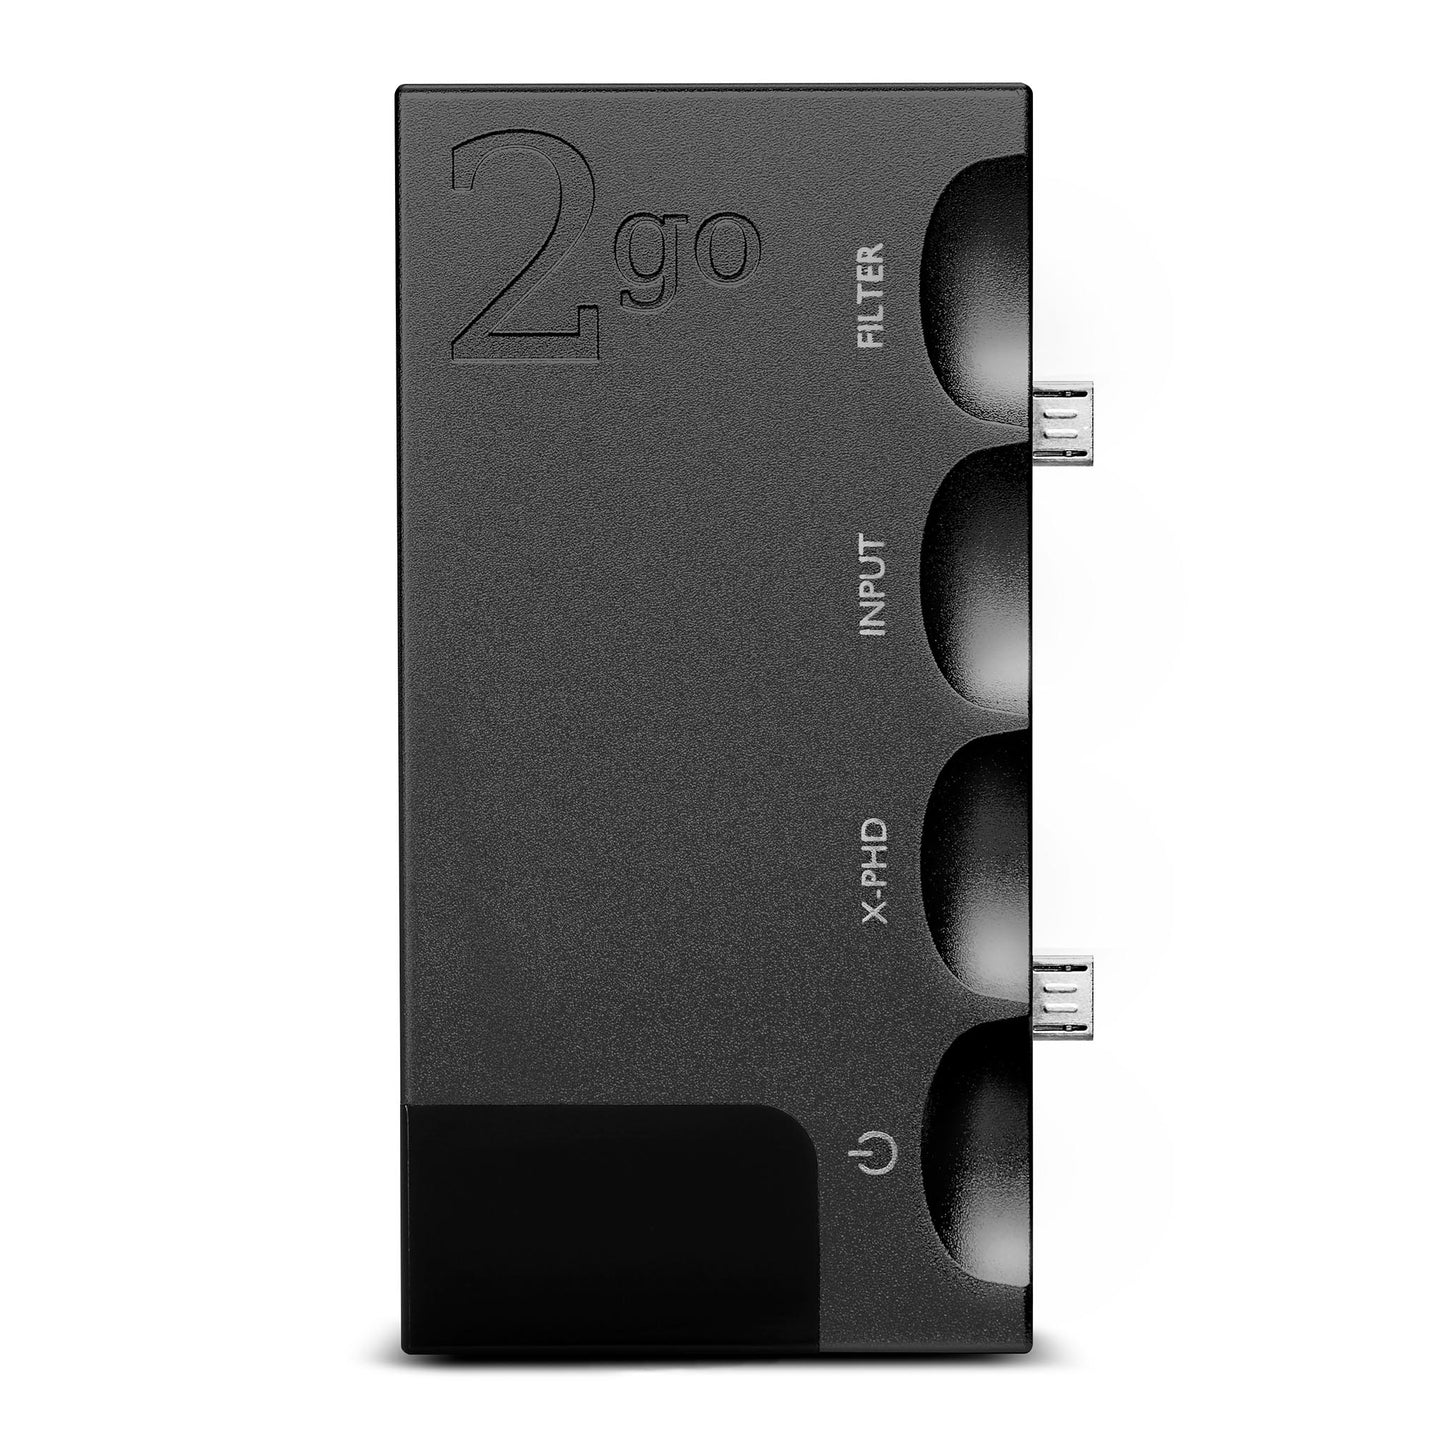 Chord 2Go Wireless Streamer for Hugo 2